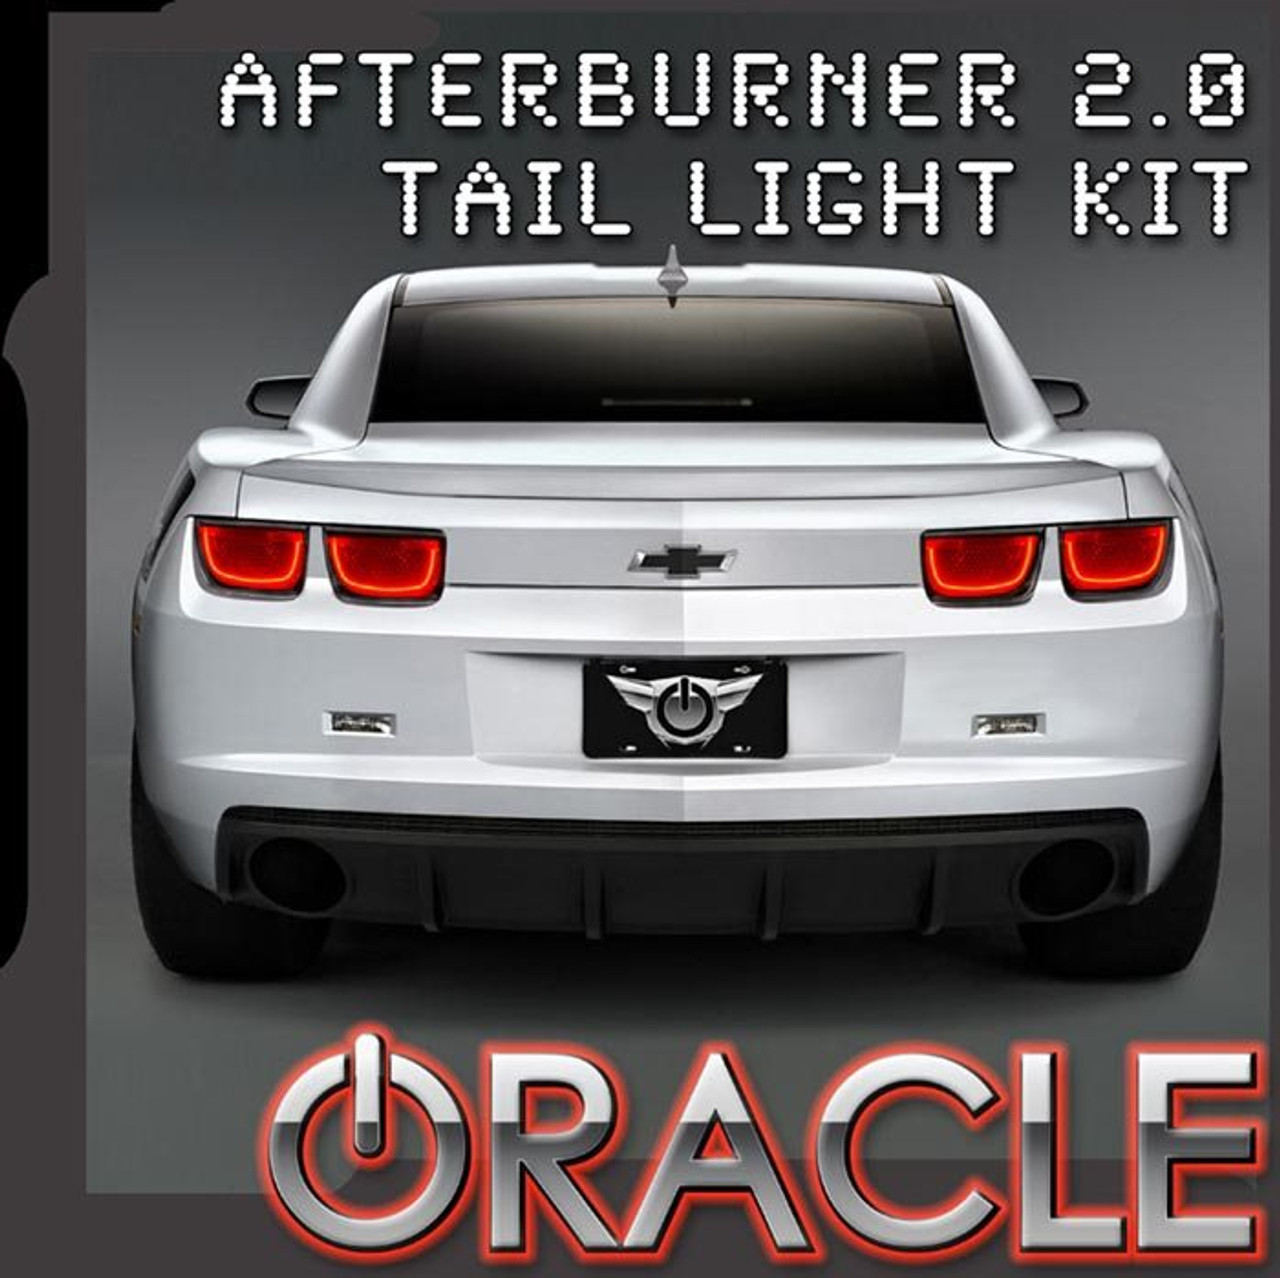 Oracle Afterburner 2.0 Tail Light Halo Kit, Red 2010-2013 Camaro